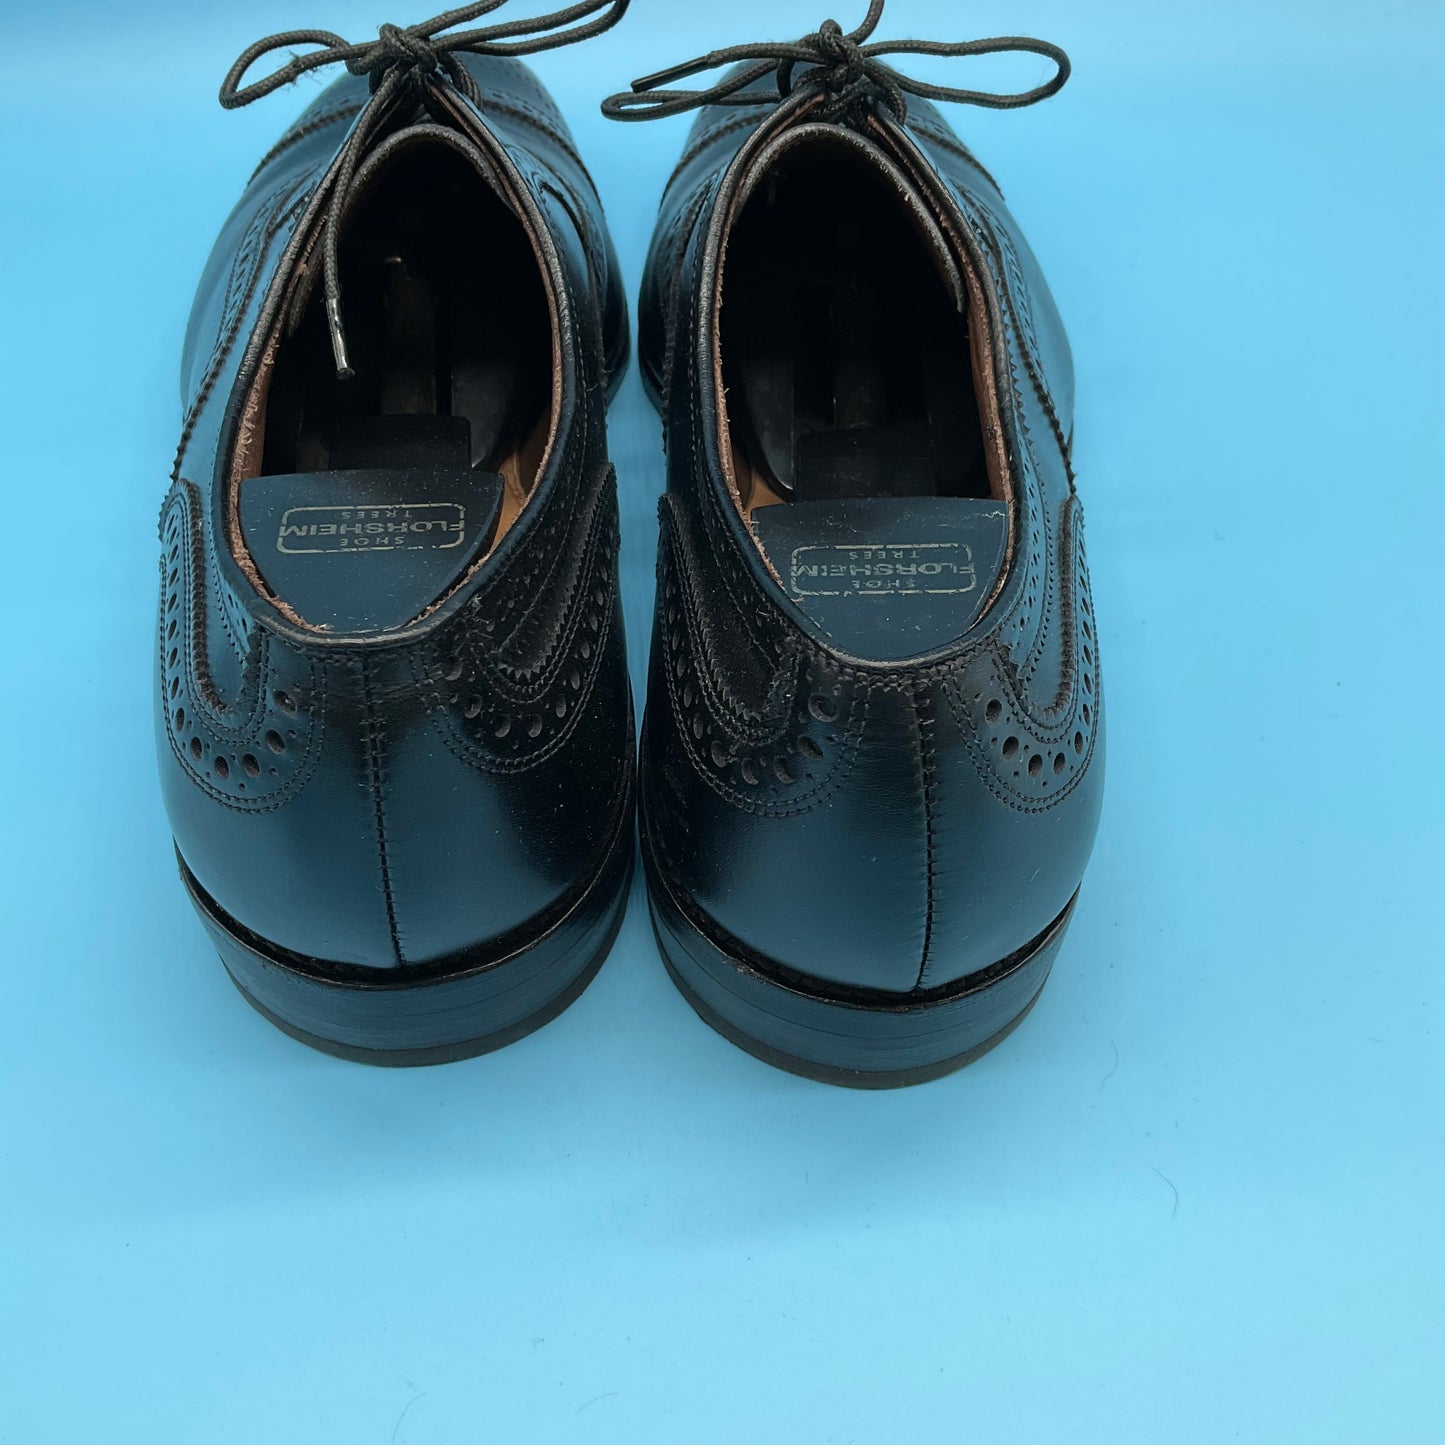 Allen Edmonds Black Cap-Toe Oxford Dress Shoe  Size 10D